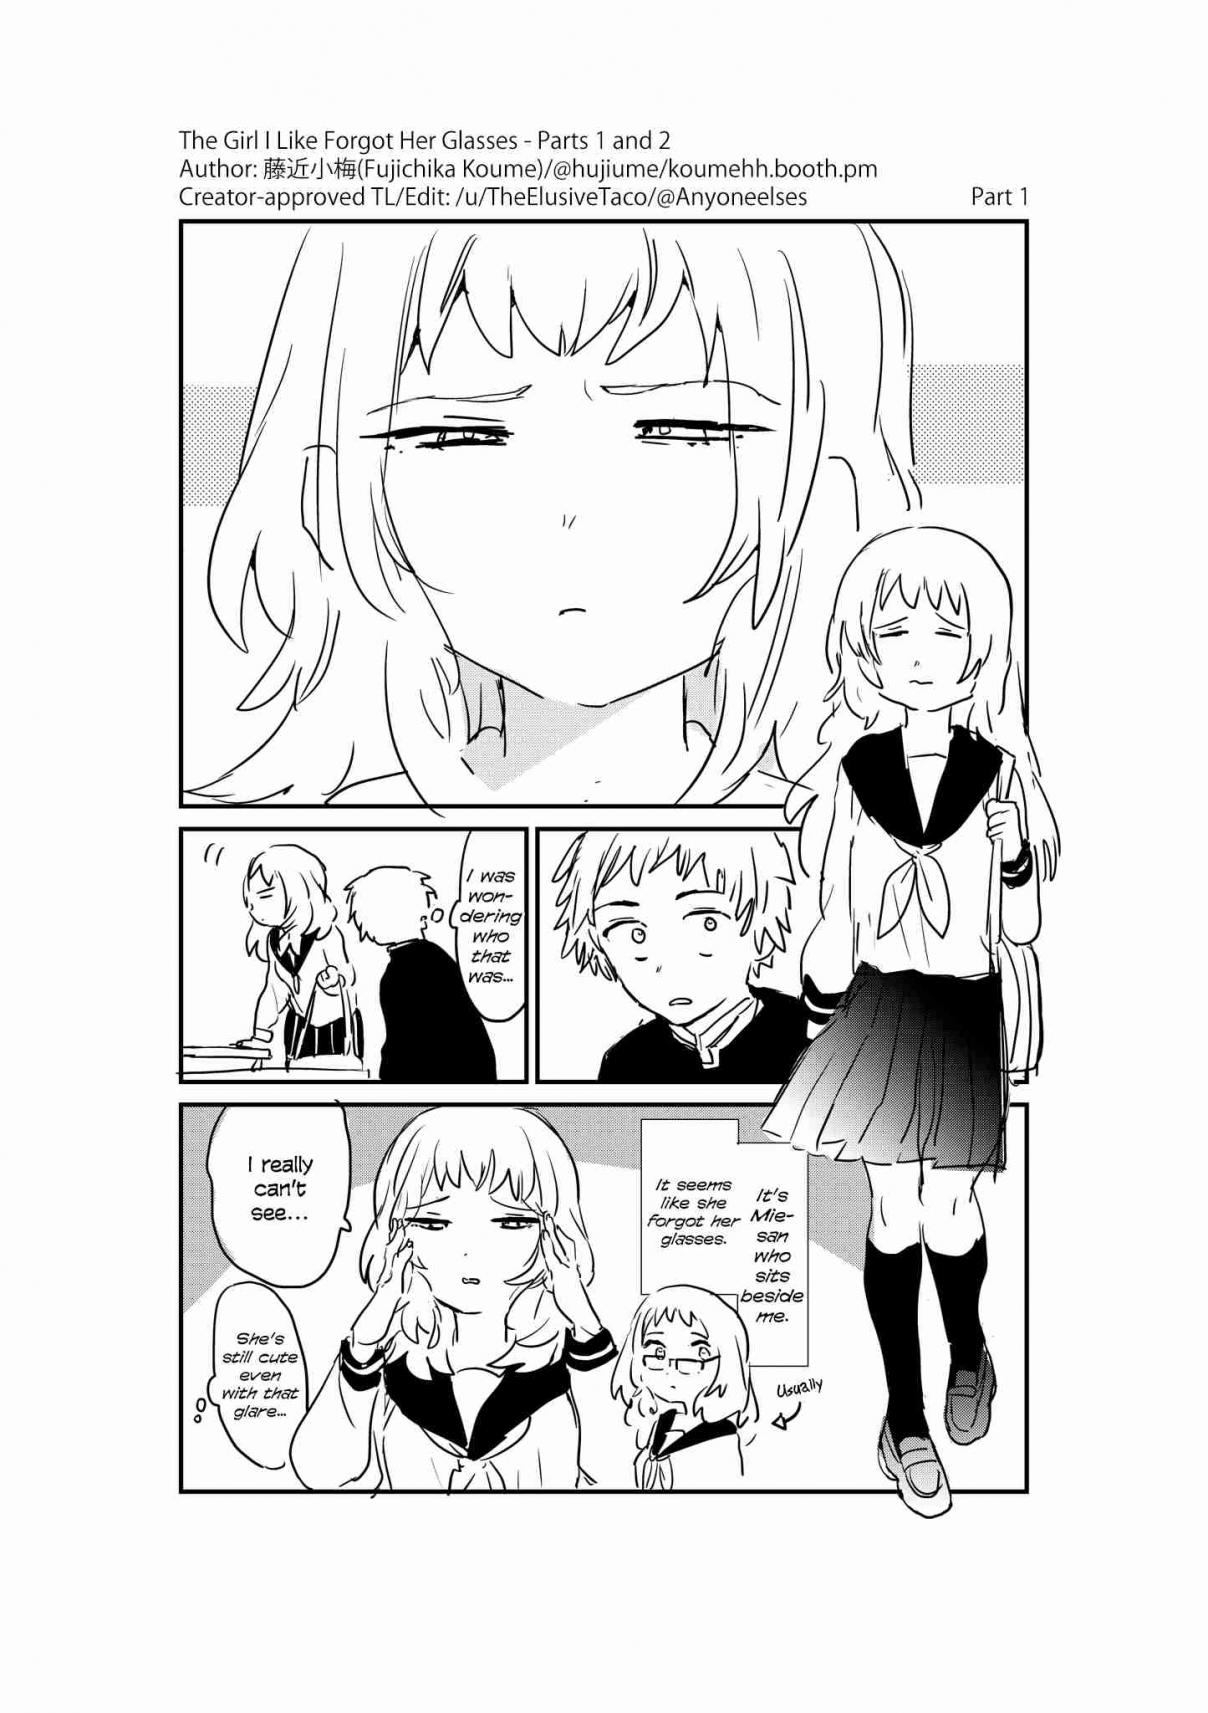 Fujichika Koume's Short Manga Ch. 1 Parts 1 and 2